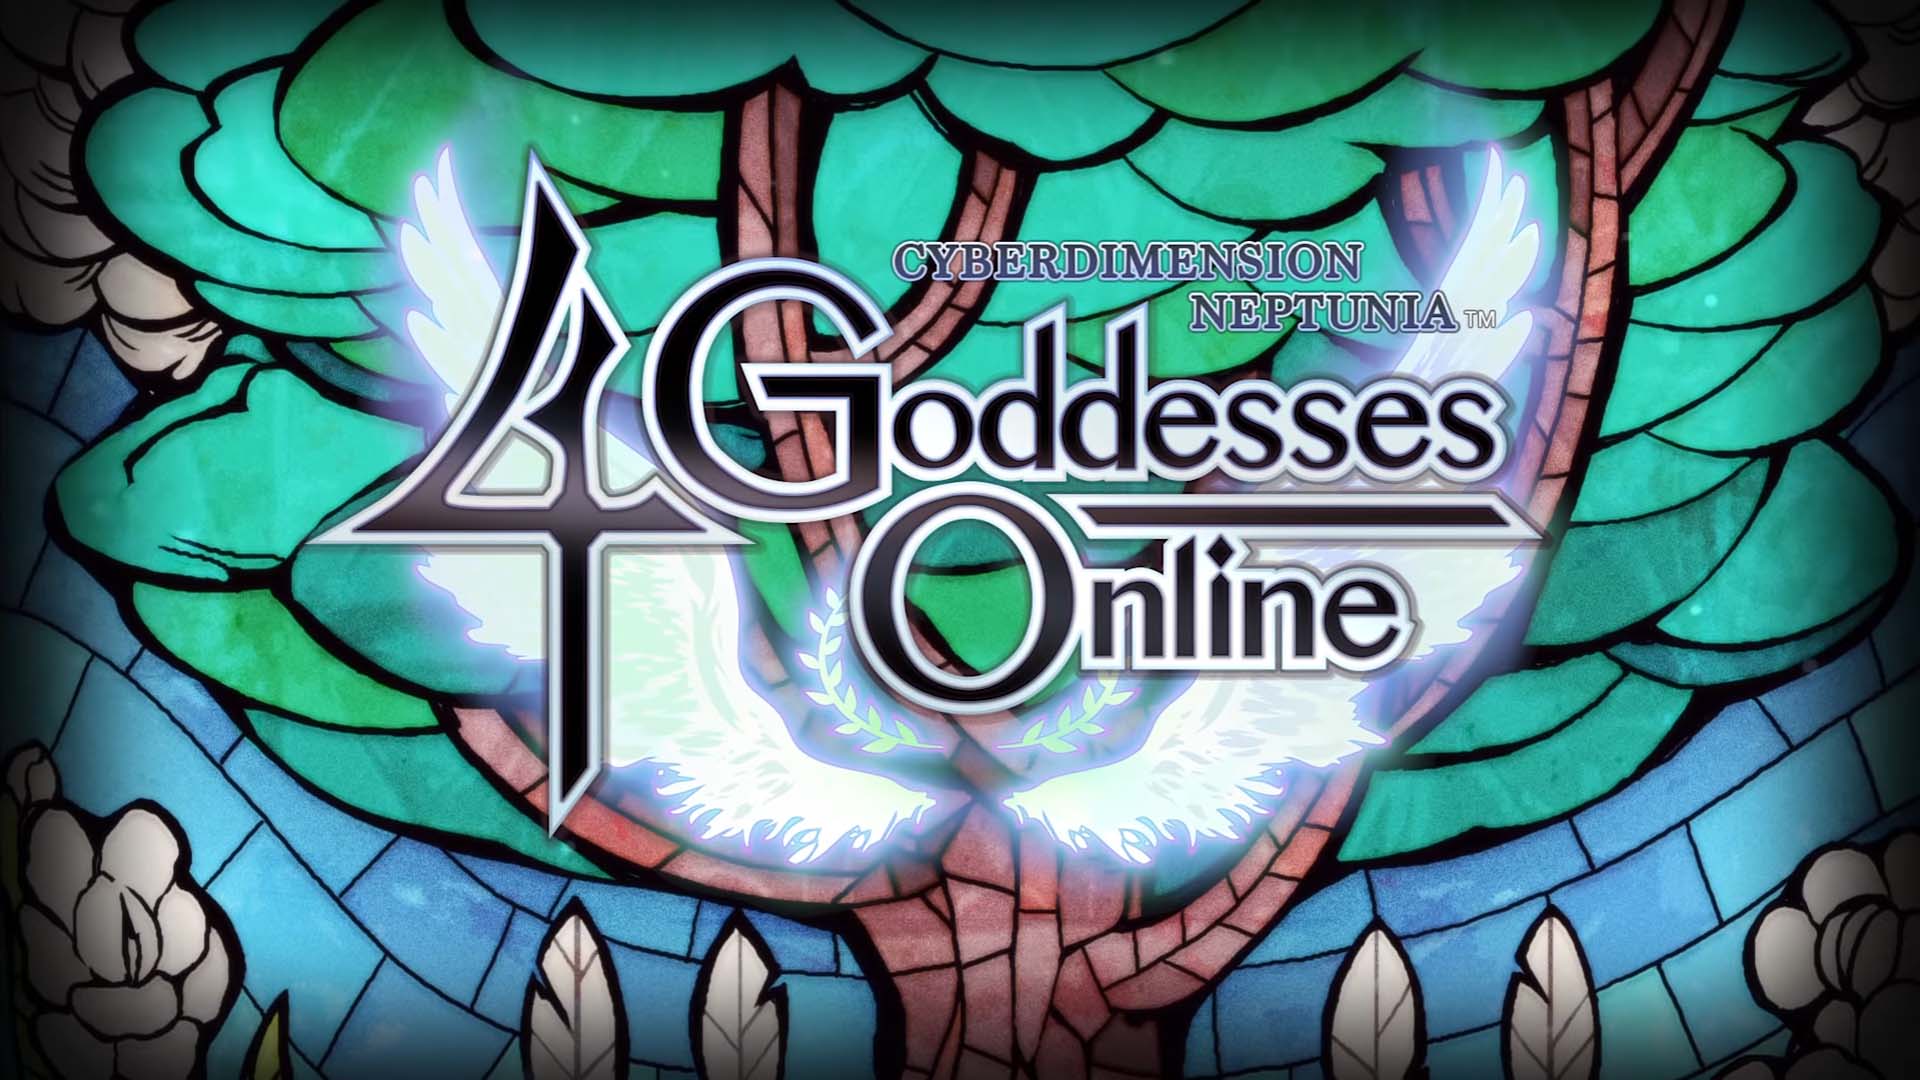 Cyberdimension Neptunia: 4 Goddesses Online chuẩn bị có bản tiếng Anh – Tin Game